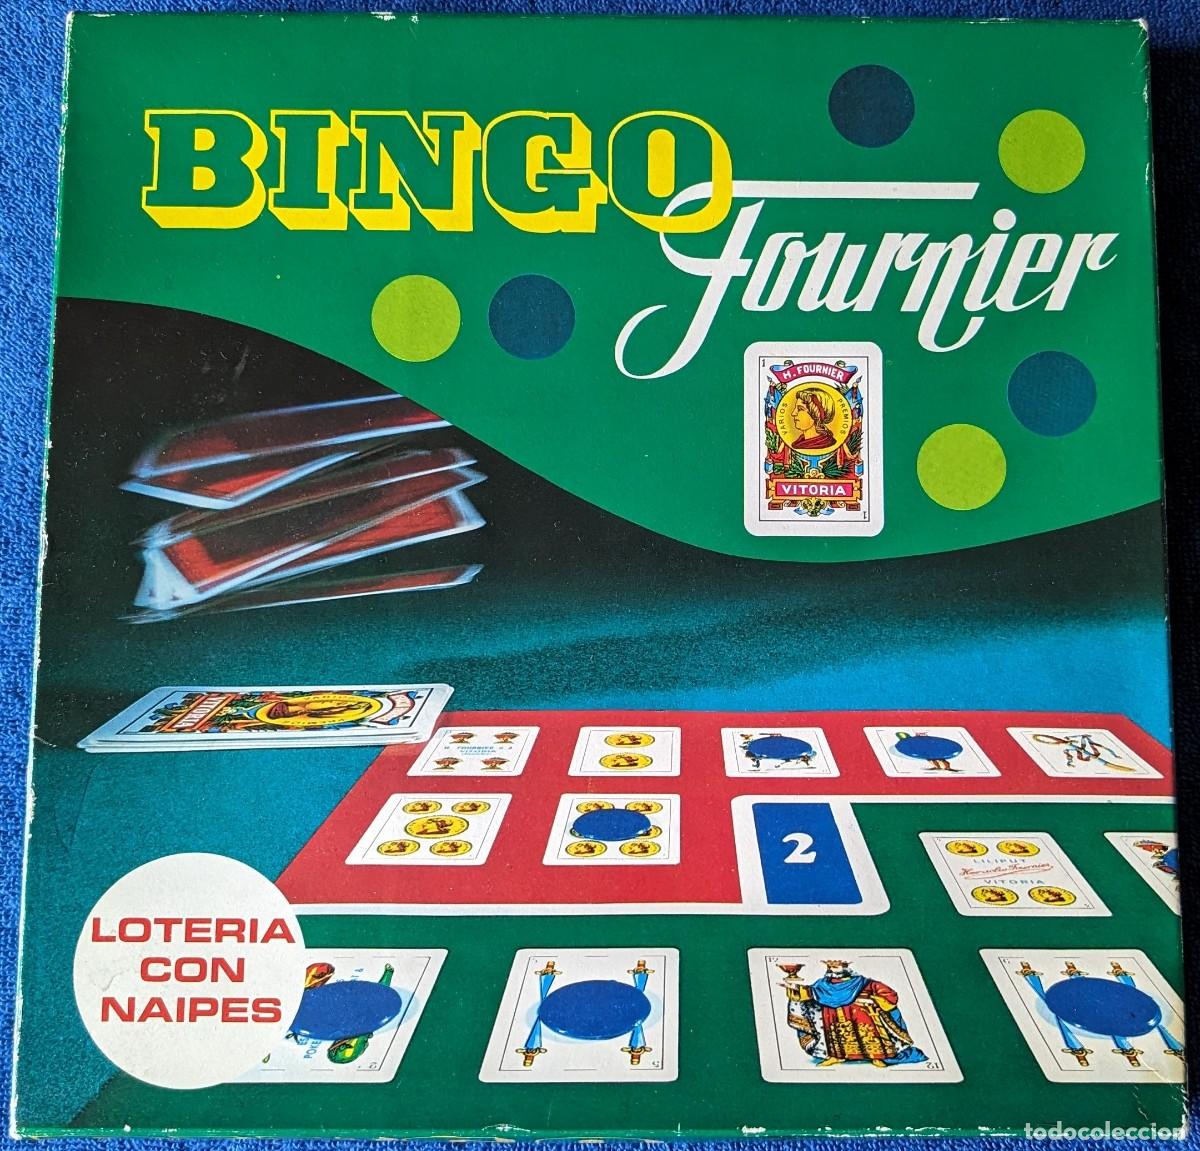 Bingo con cartas españolas